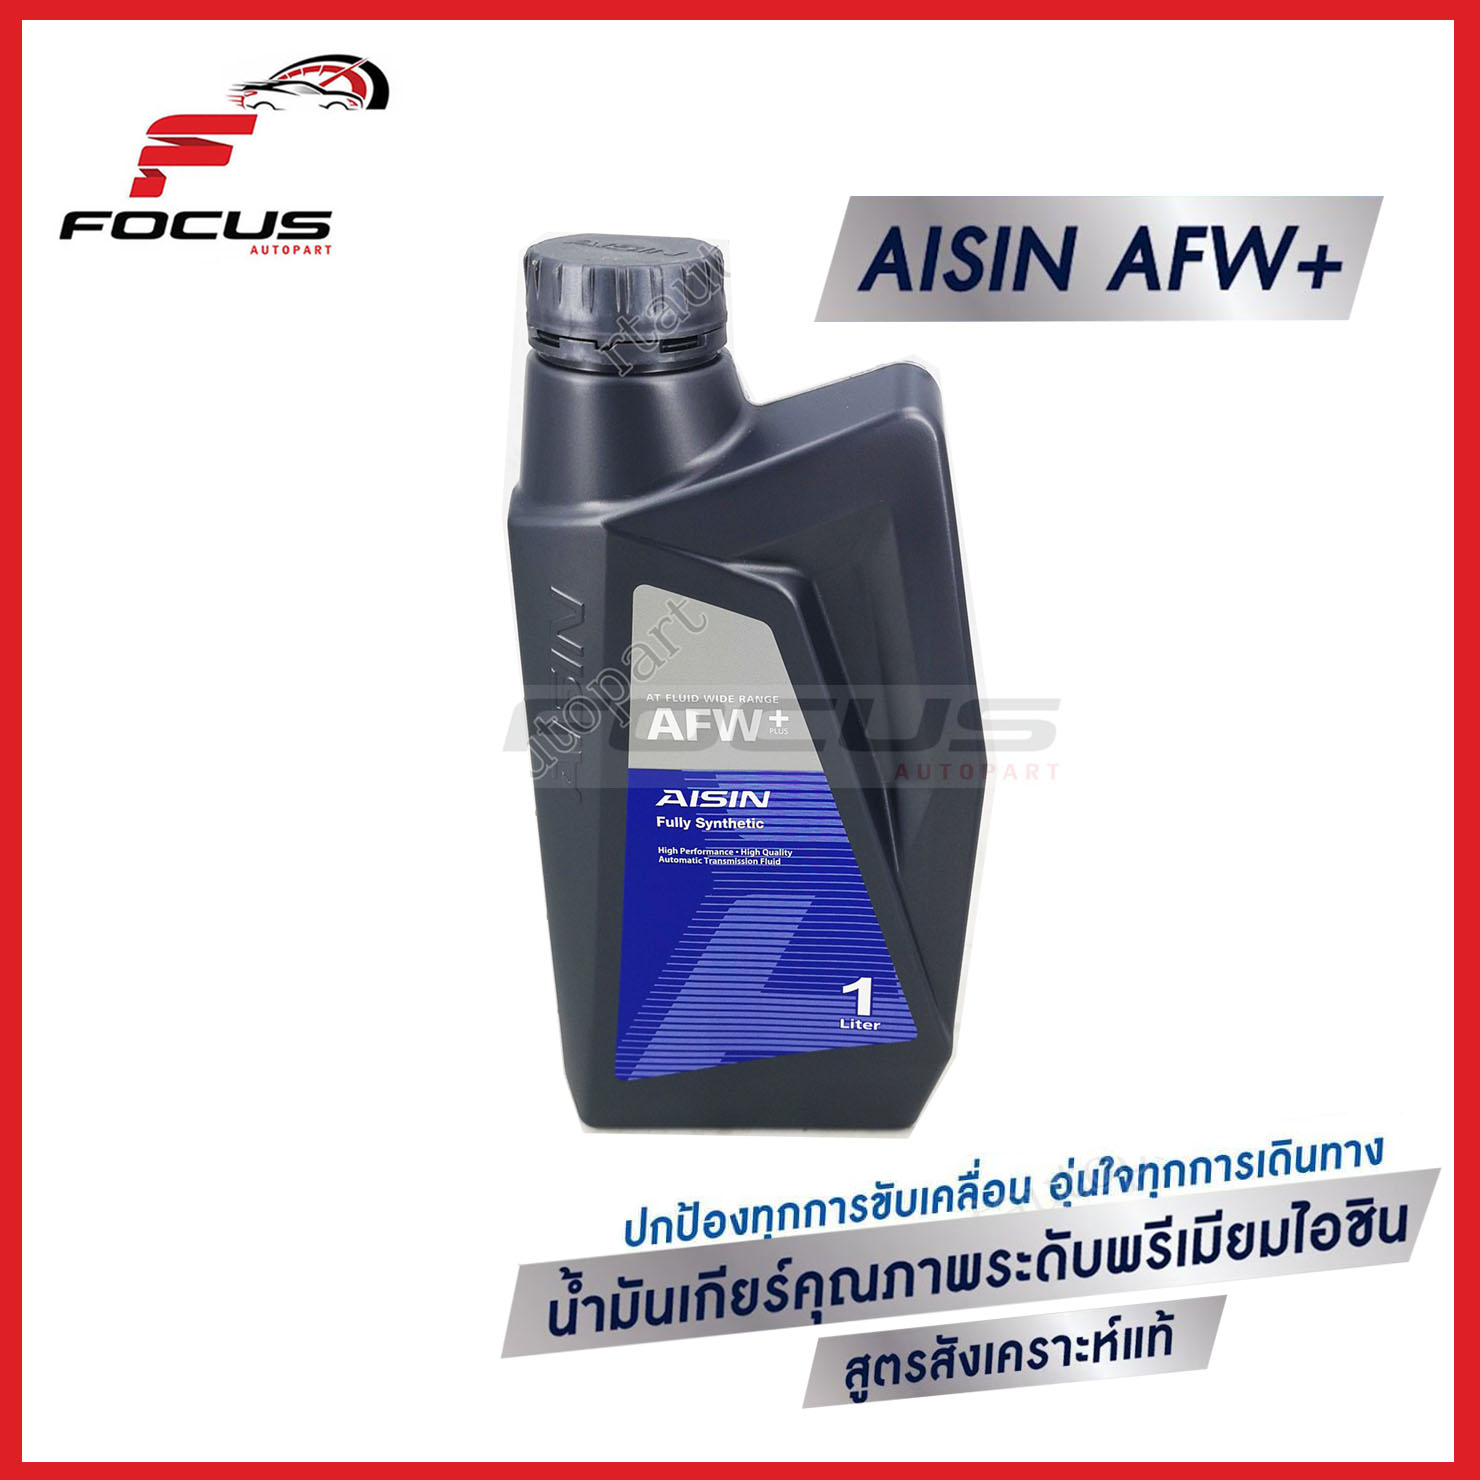 AISIN น้ำมันเกียร์สังเคราะห์100% ไอซิน AFW+ Aisin AFW+ ขนาด1ลิตร / น้ำมันเกียร์ Aisin / น้ำมันเกียร์สังเคราะห์ Fully Synthetic